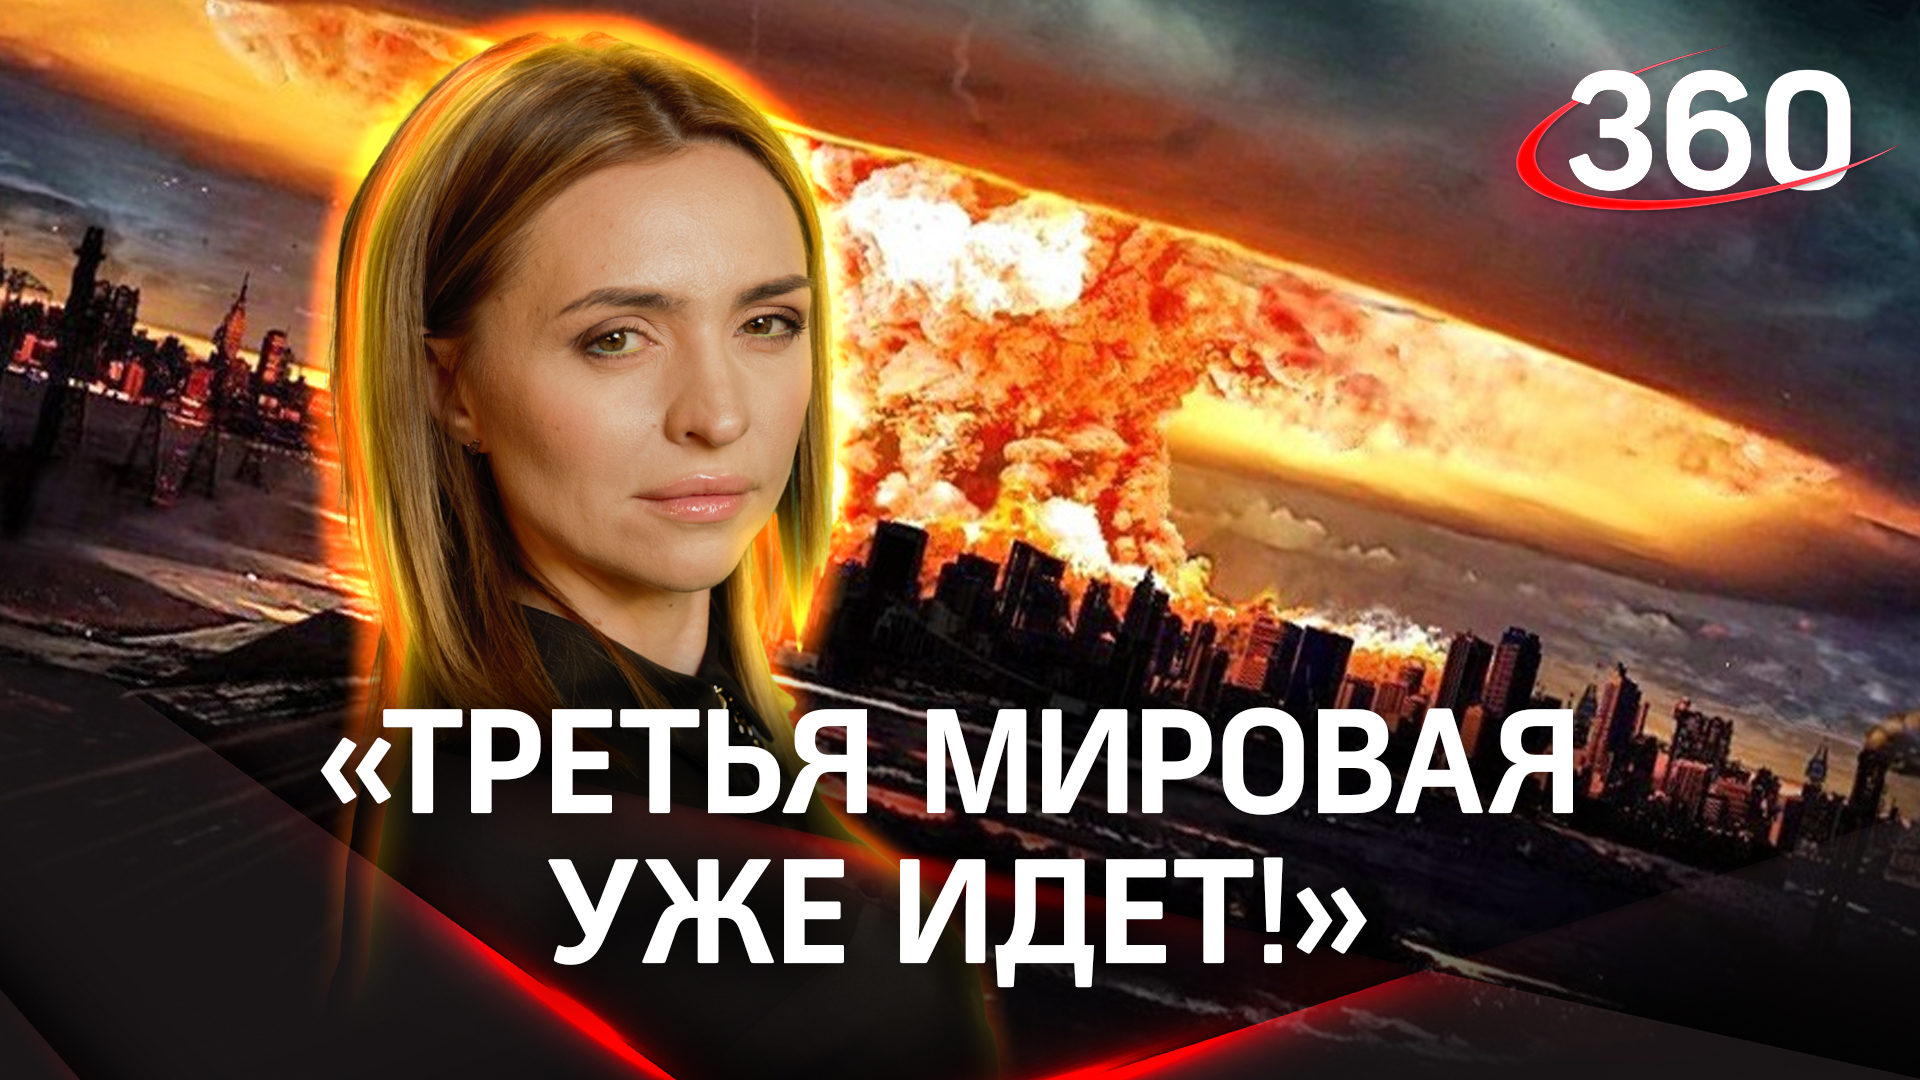 «Третья мировая уже идет!». Данилов обвинил НАТО в трусости. Екатерина Малашенко